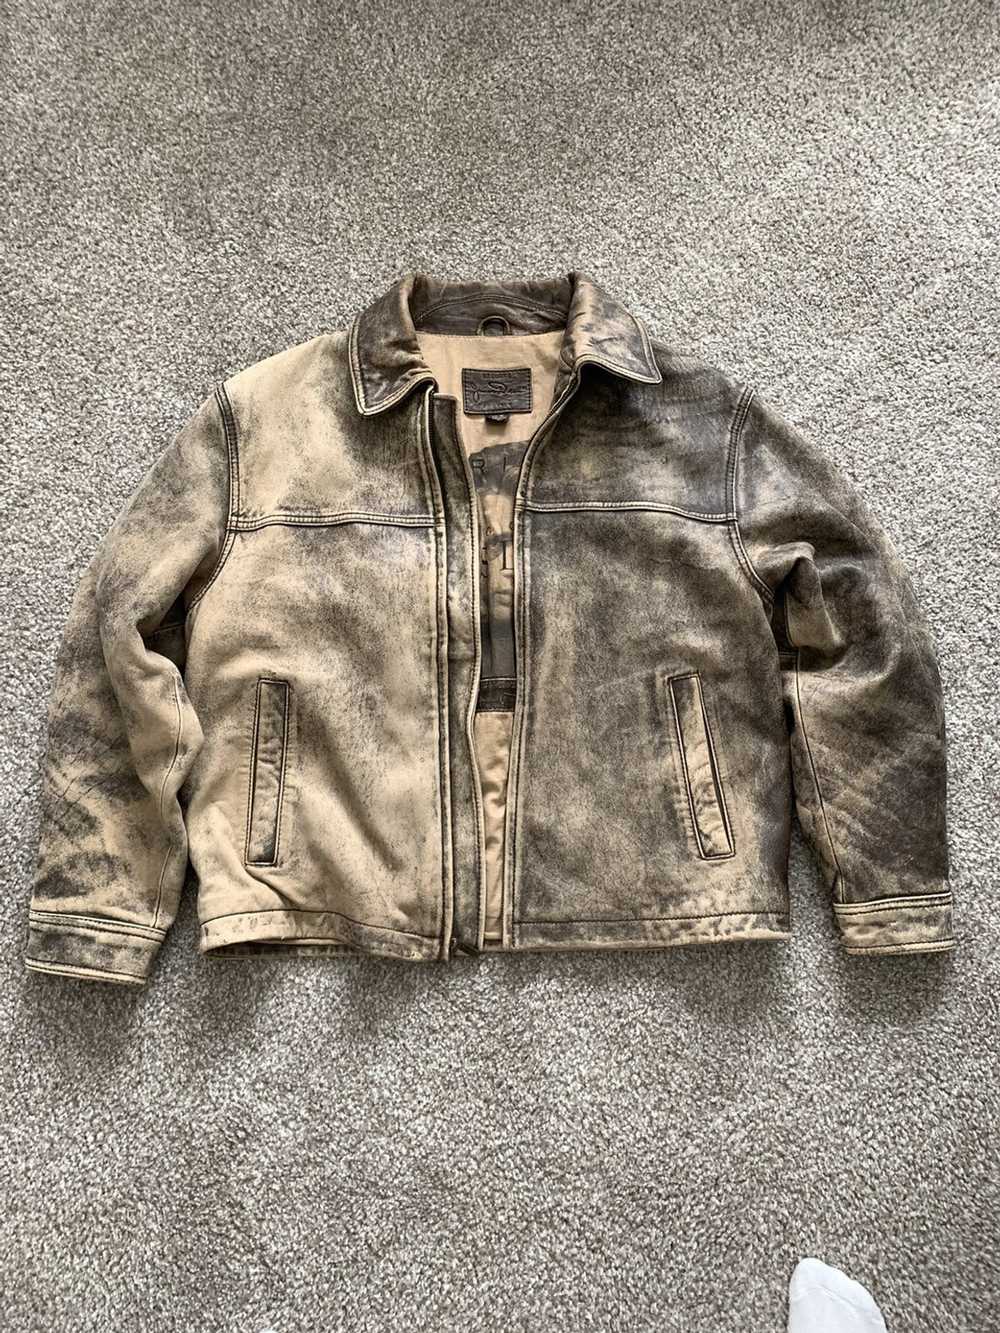 Vintage James dean leather jacket - image 2